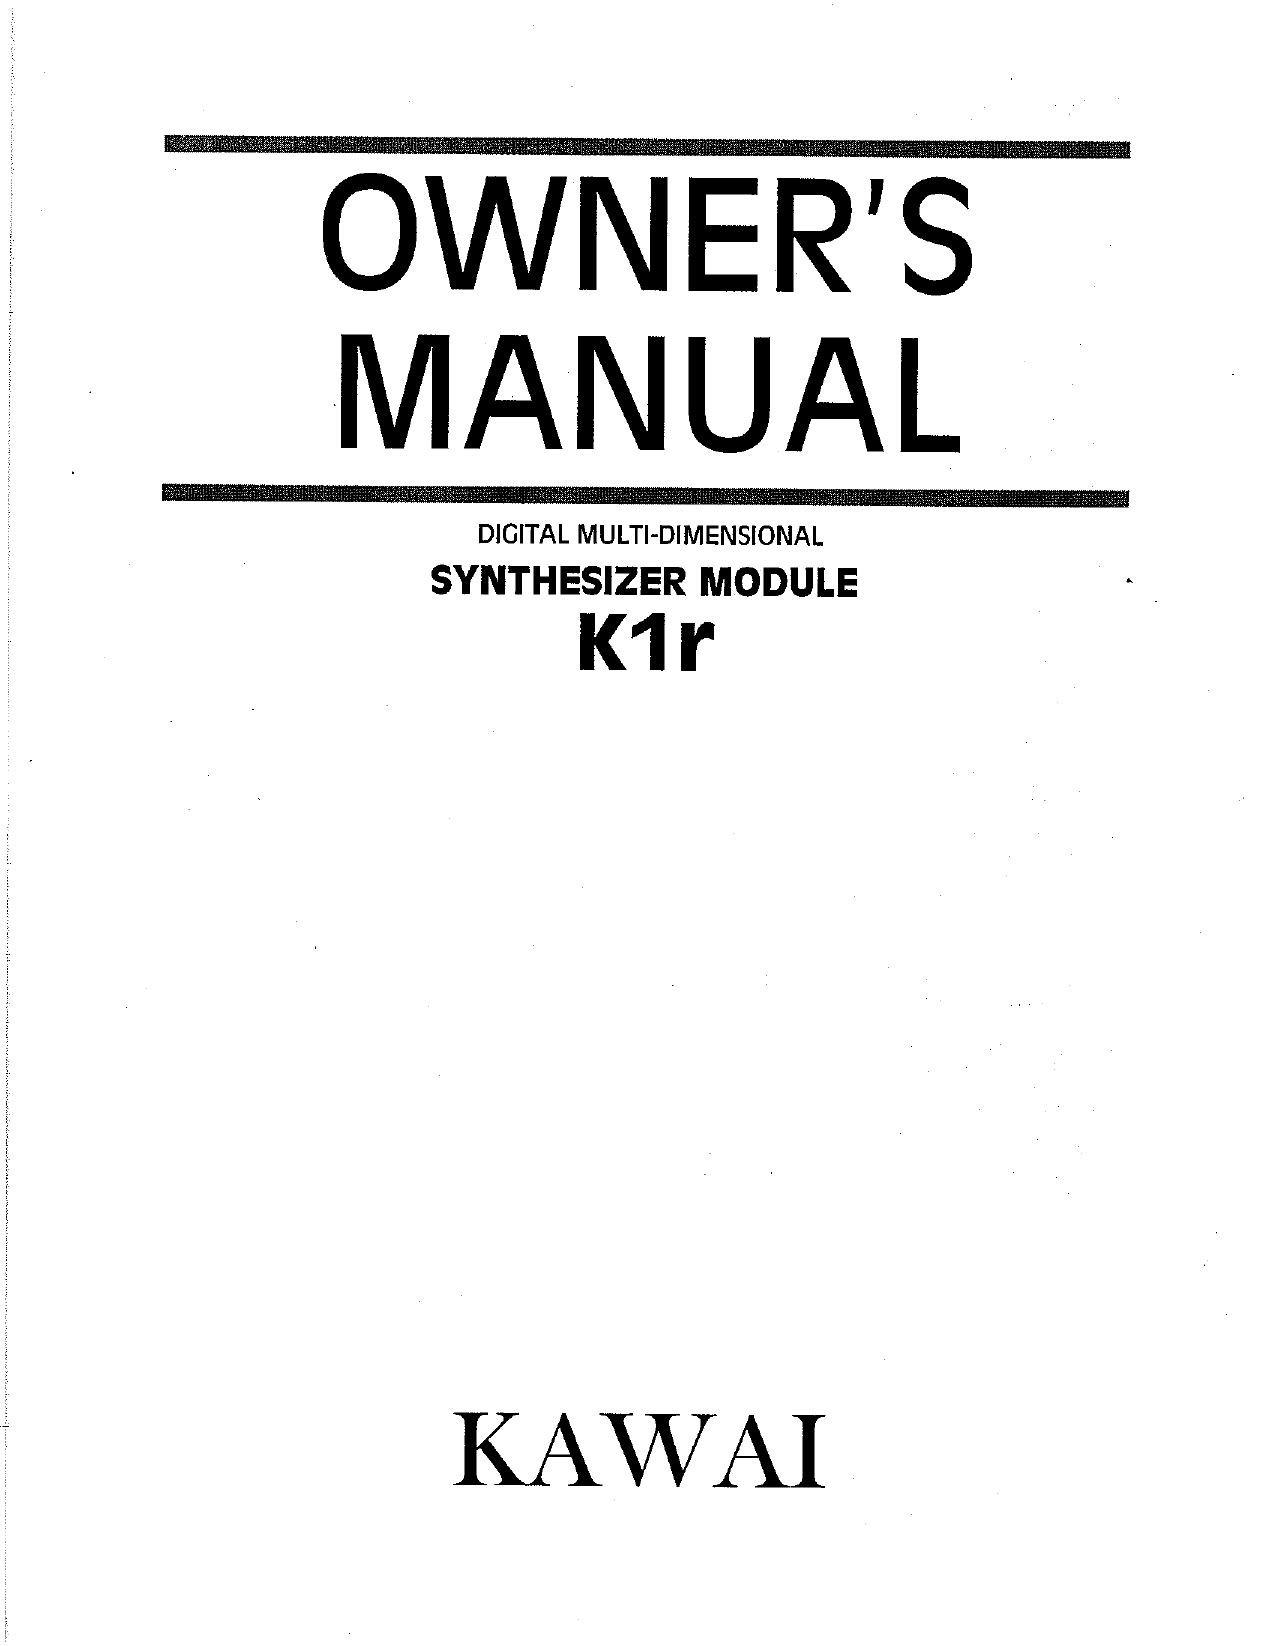 kawai k4 manual